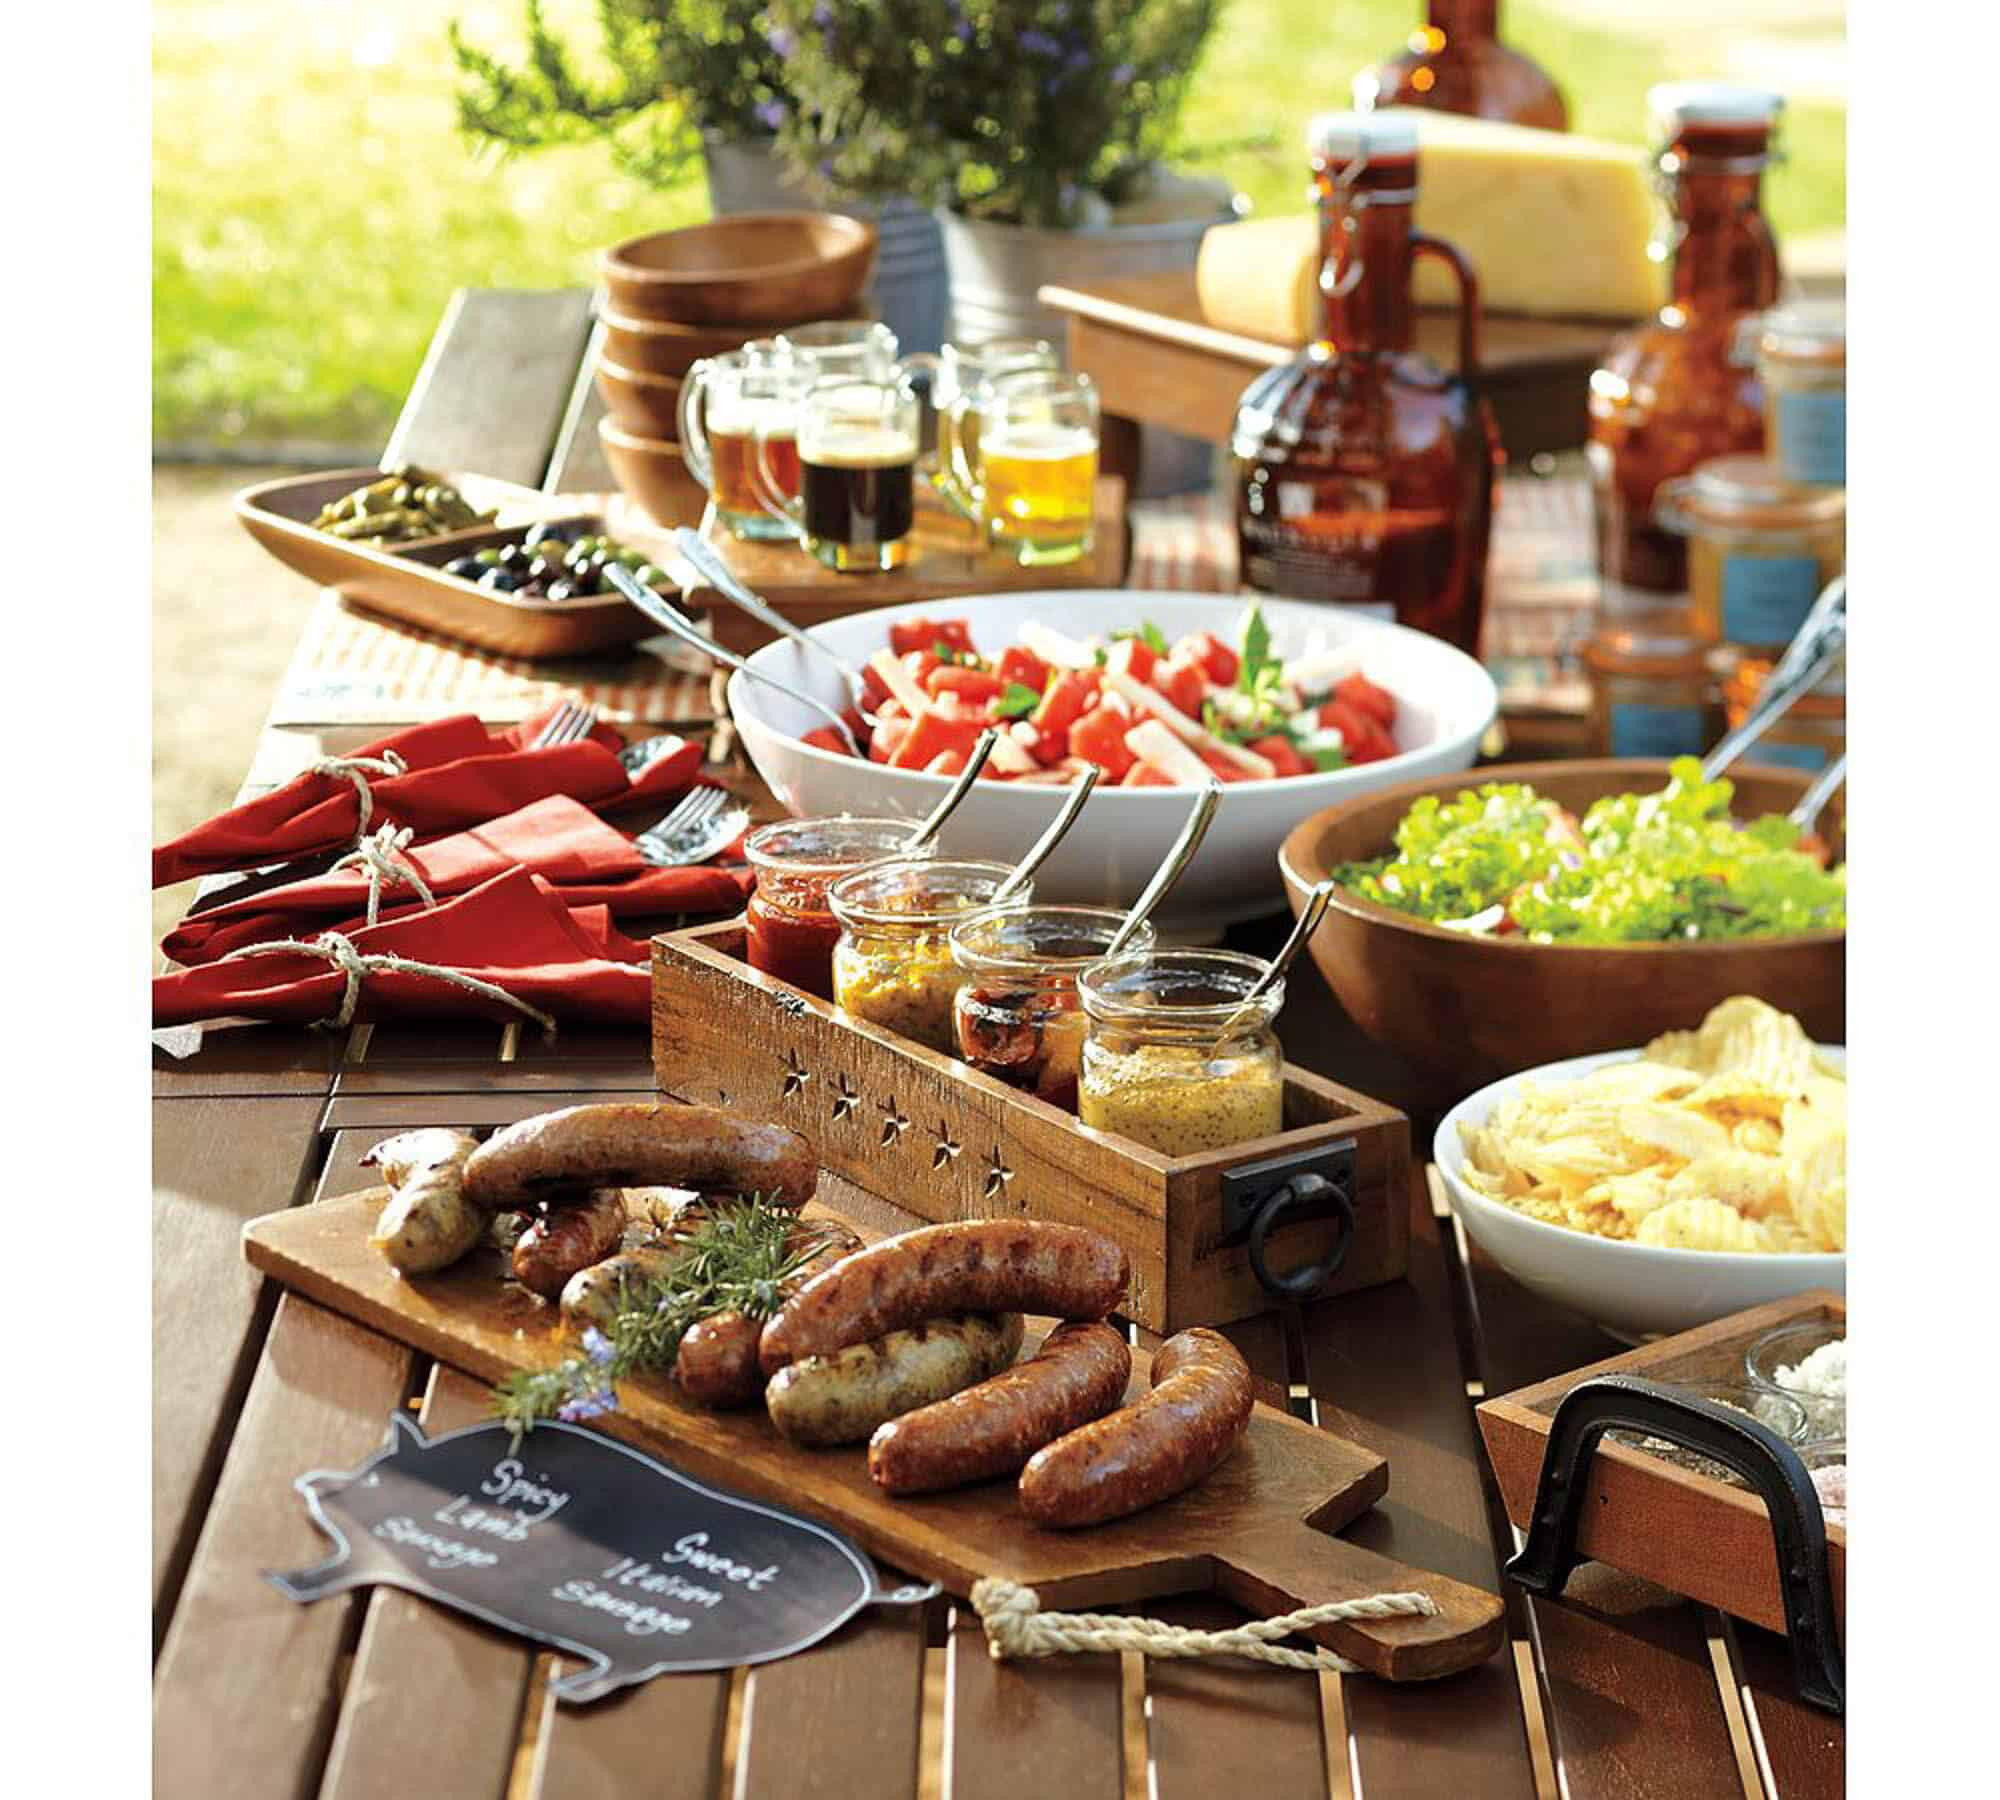 Summer Party Buffet Menu Ideas
 How to Host a Backyard Party & BBQ — Gentleman s Gazette